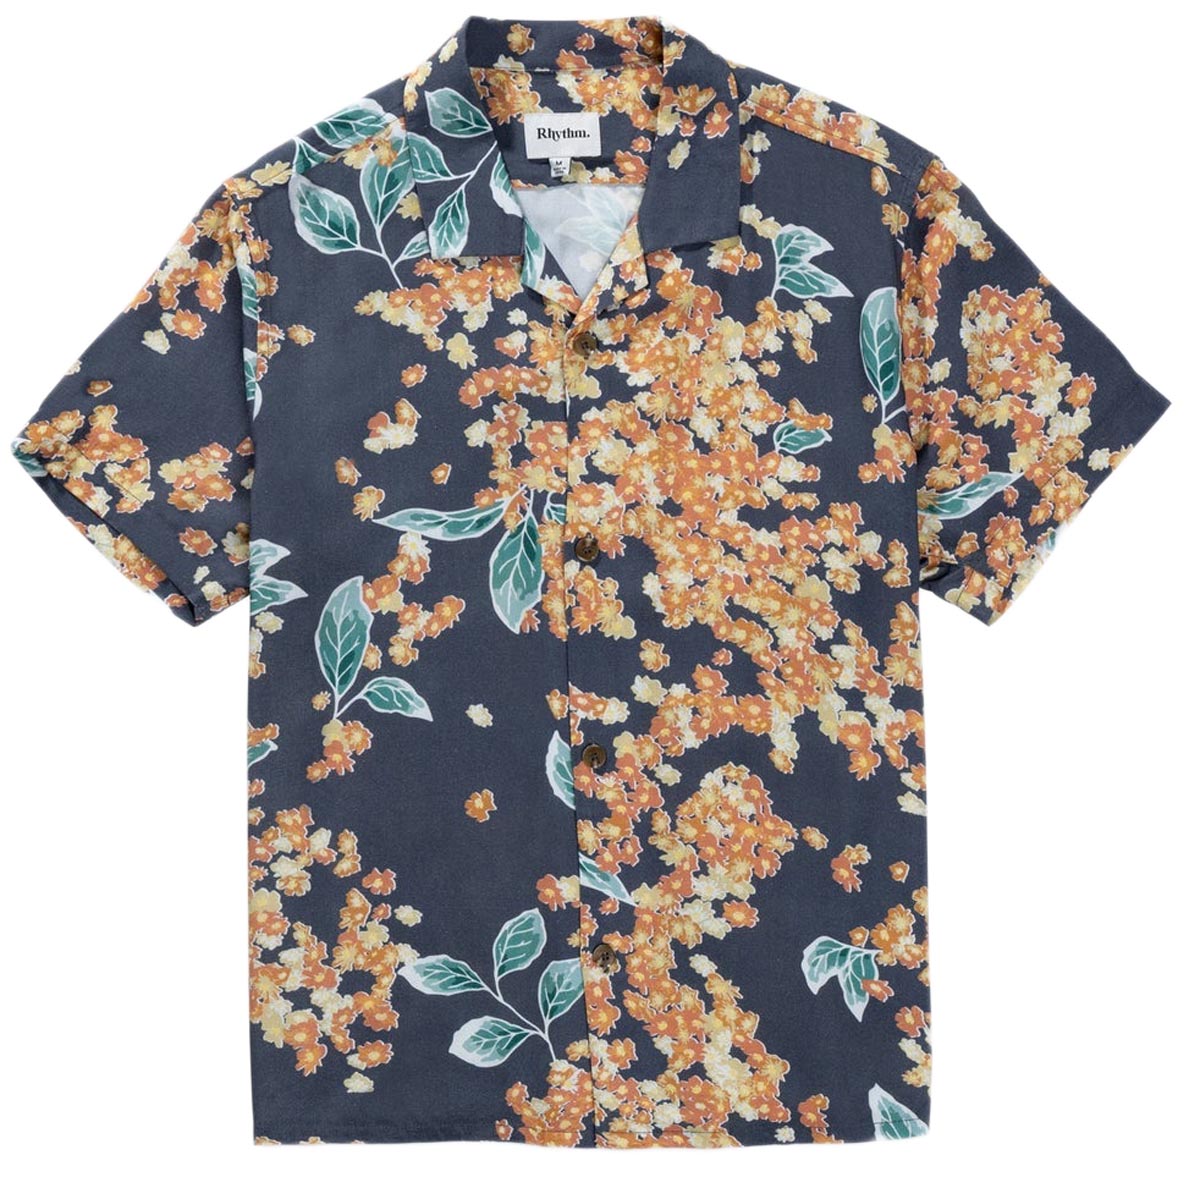 Rhythm Isle Floral Cuban Shirt - Dark Navy image 3